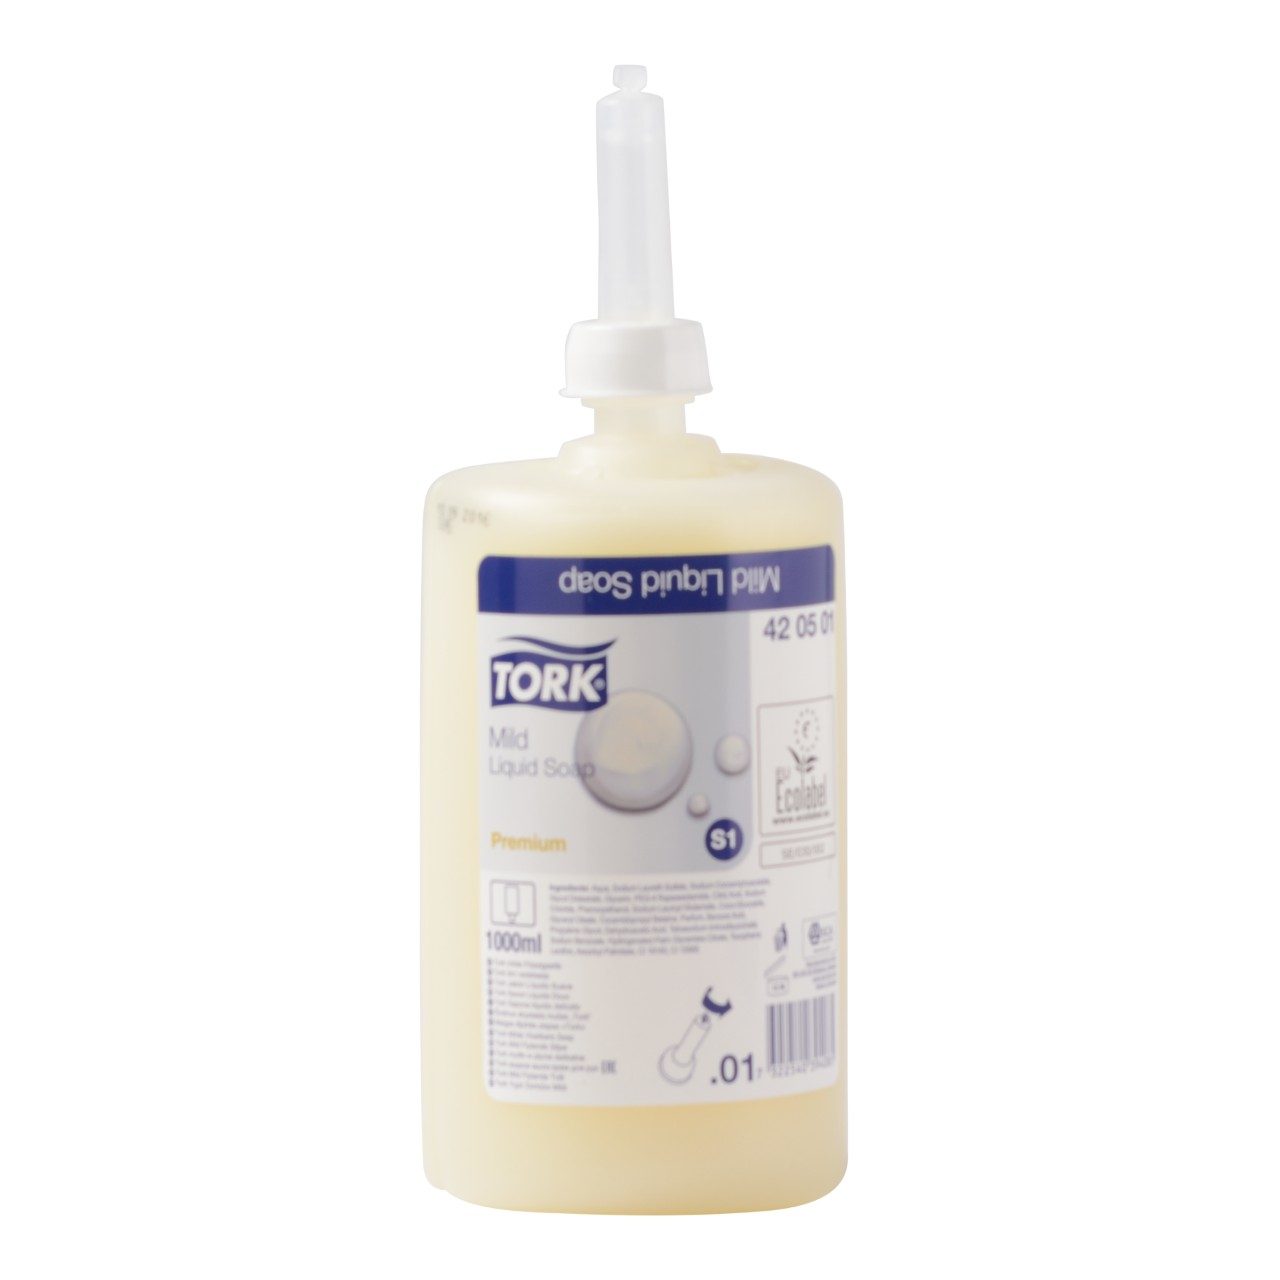 S1 Liquid soap Mild